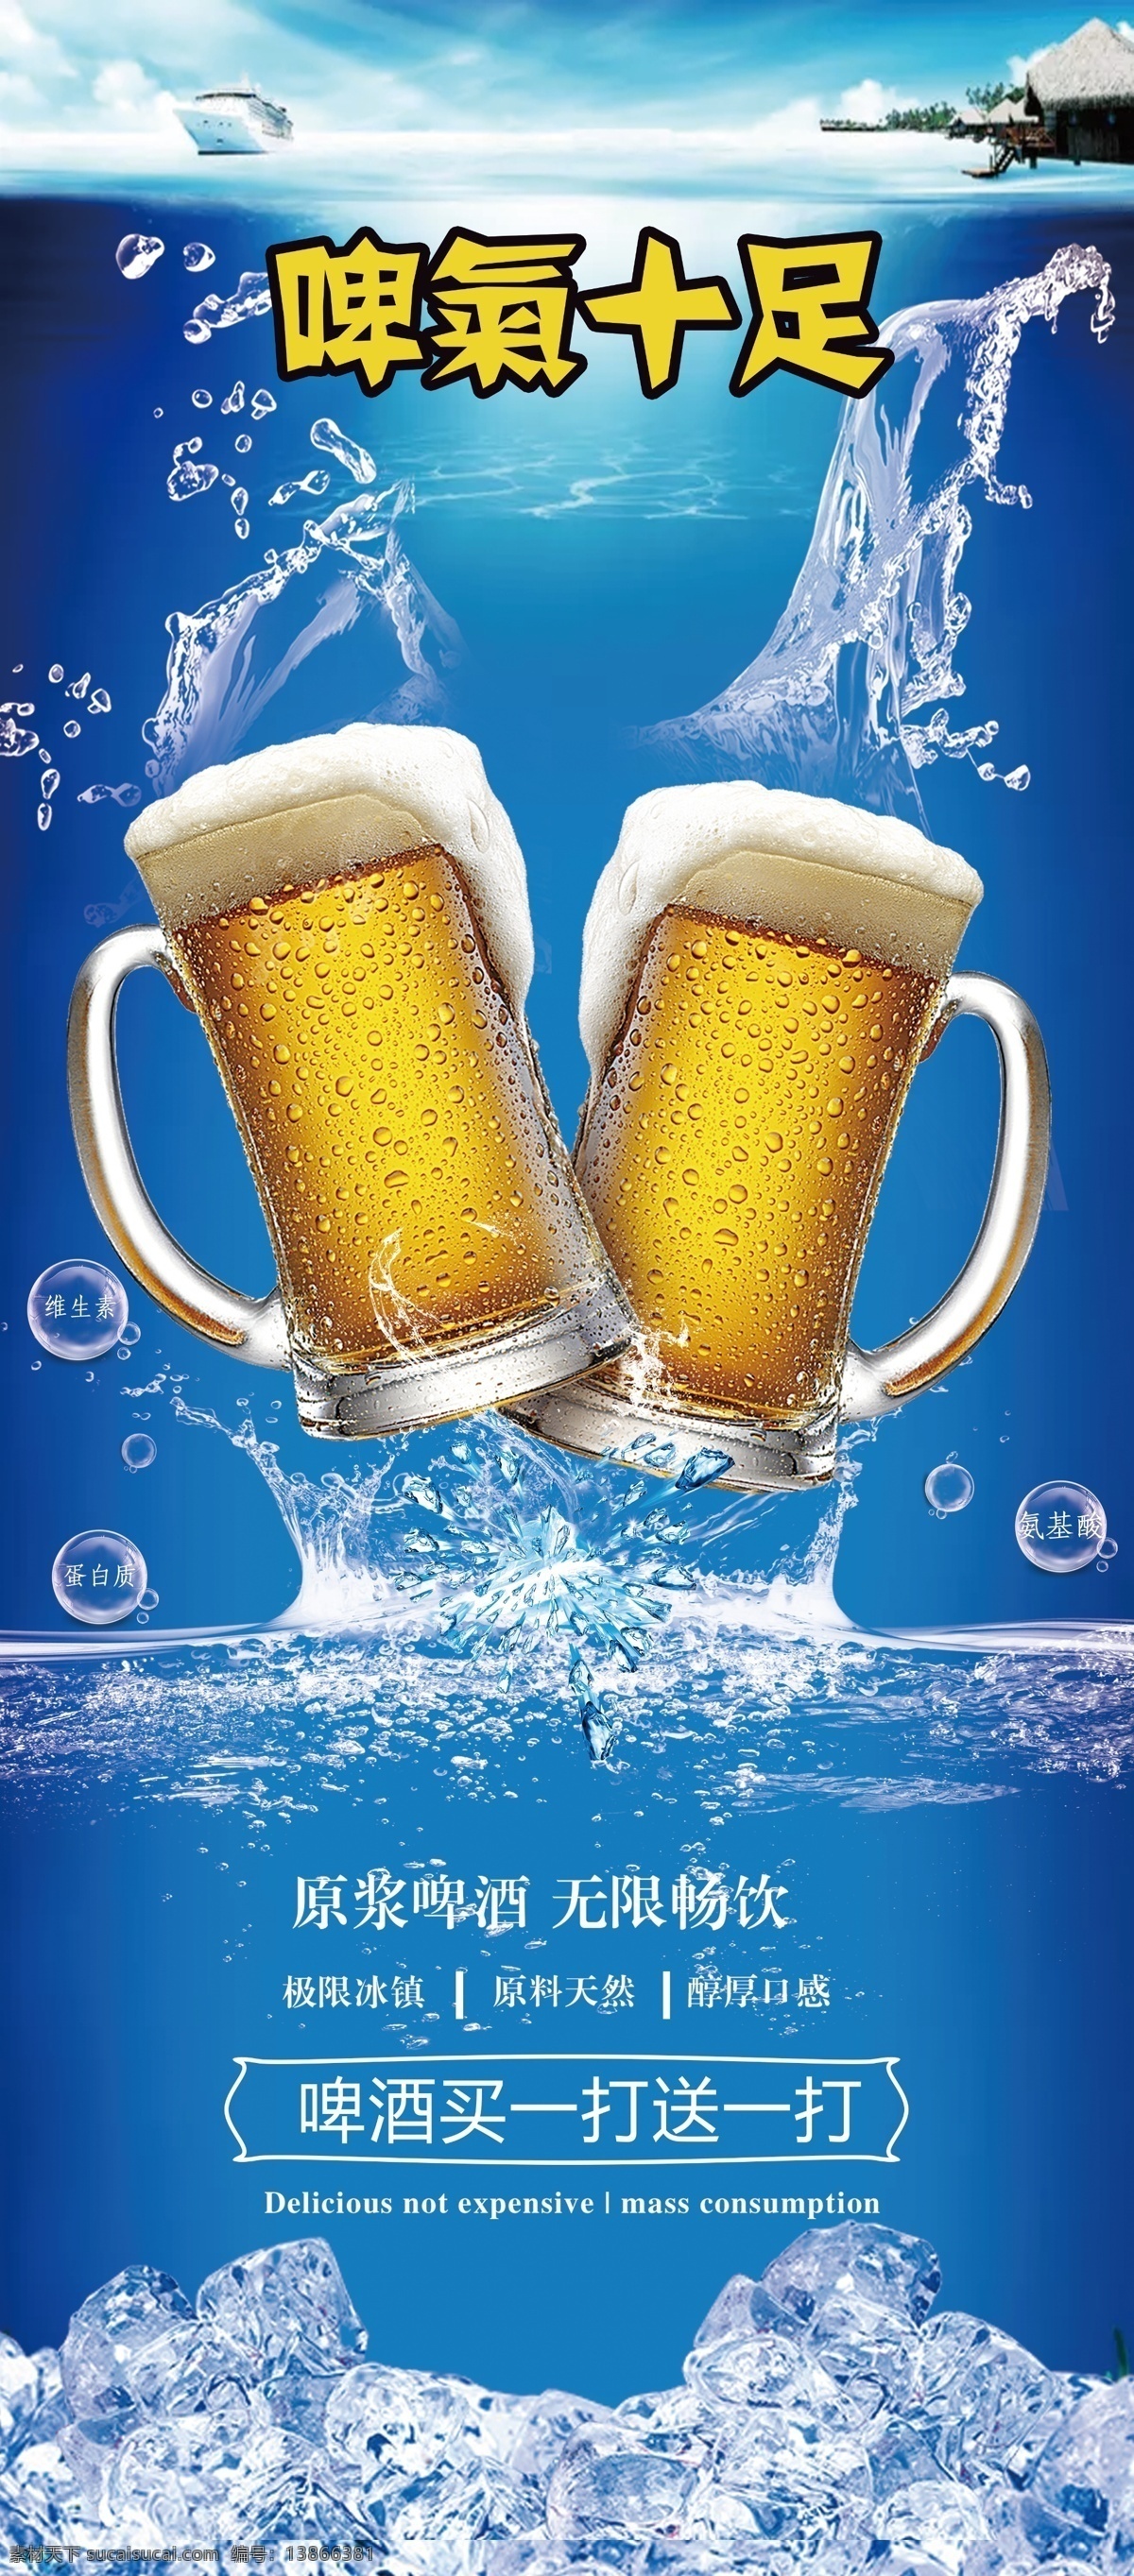 啤酒 文化节 海报 啤酒文化节 啤酒文化展架 啤酒文化海报 啤酒海报 冰啤海报 扎啤海报 分层